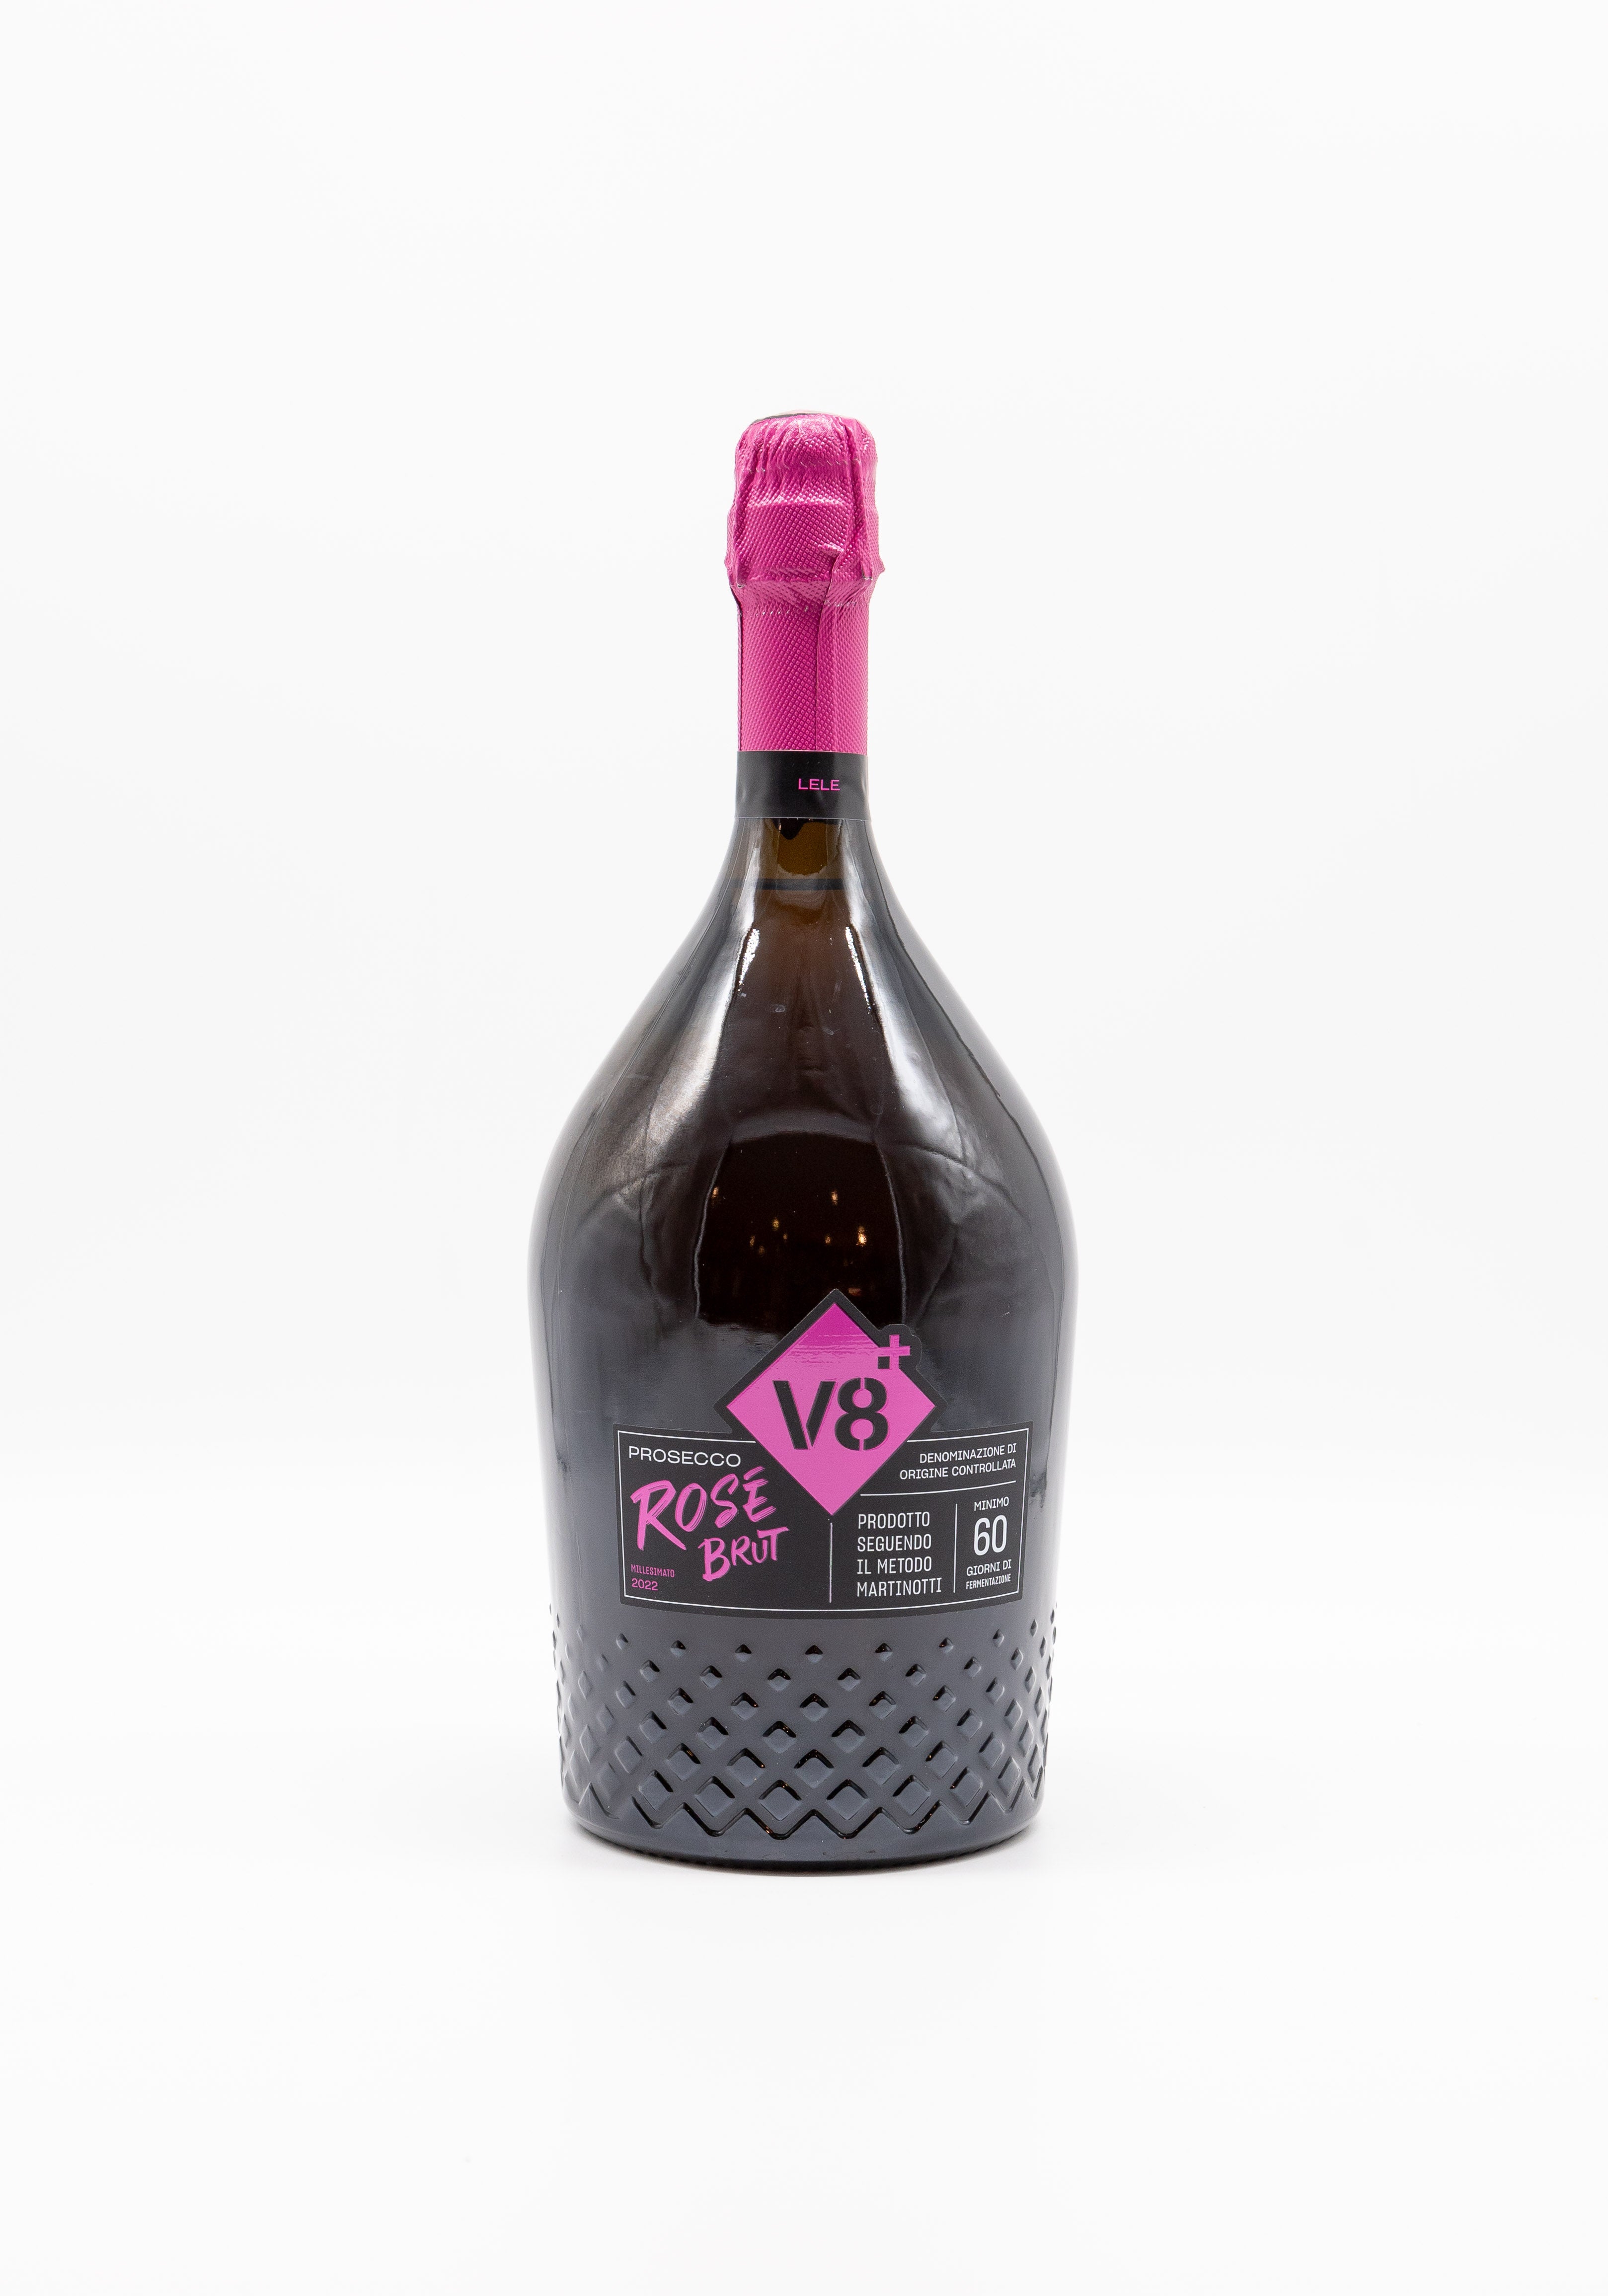 Lele+V8++Prosecco+Rosé+Brut+Millesimato+2022+Magnum+Leone+Alato